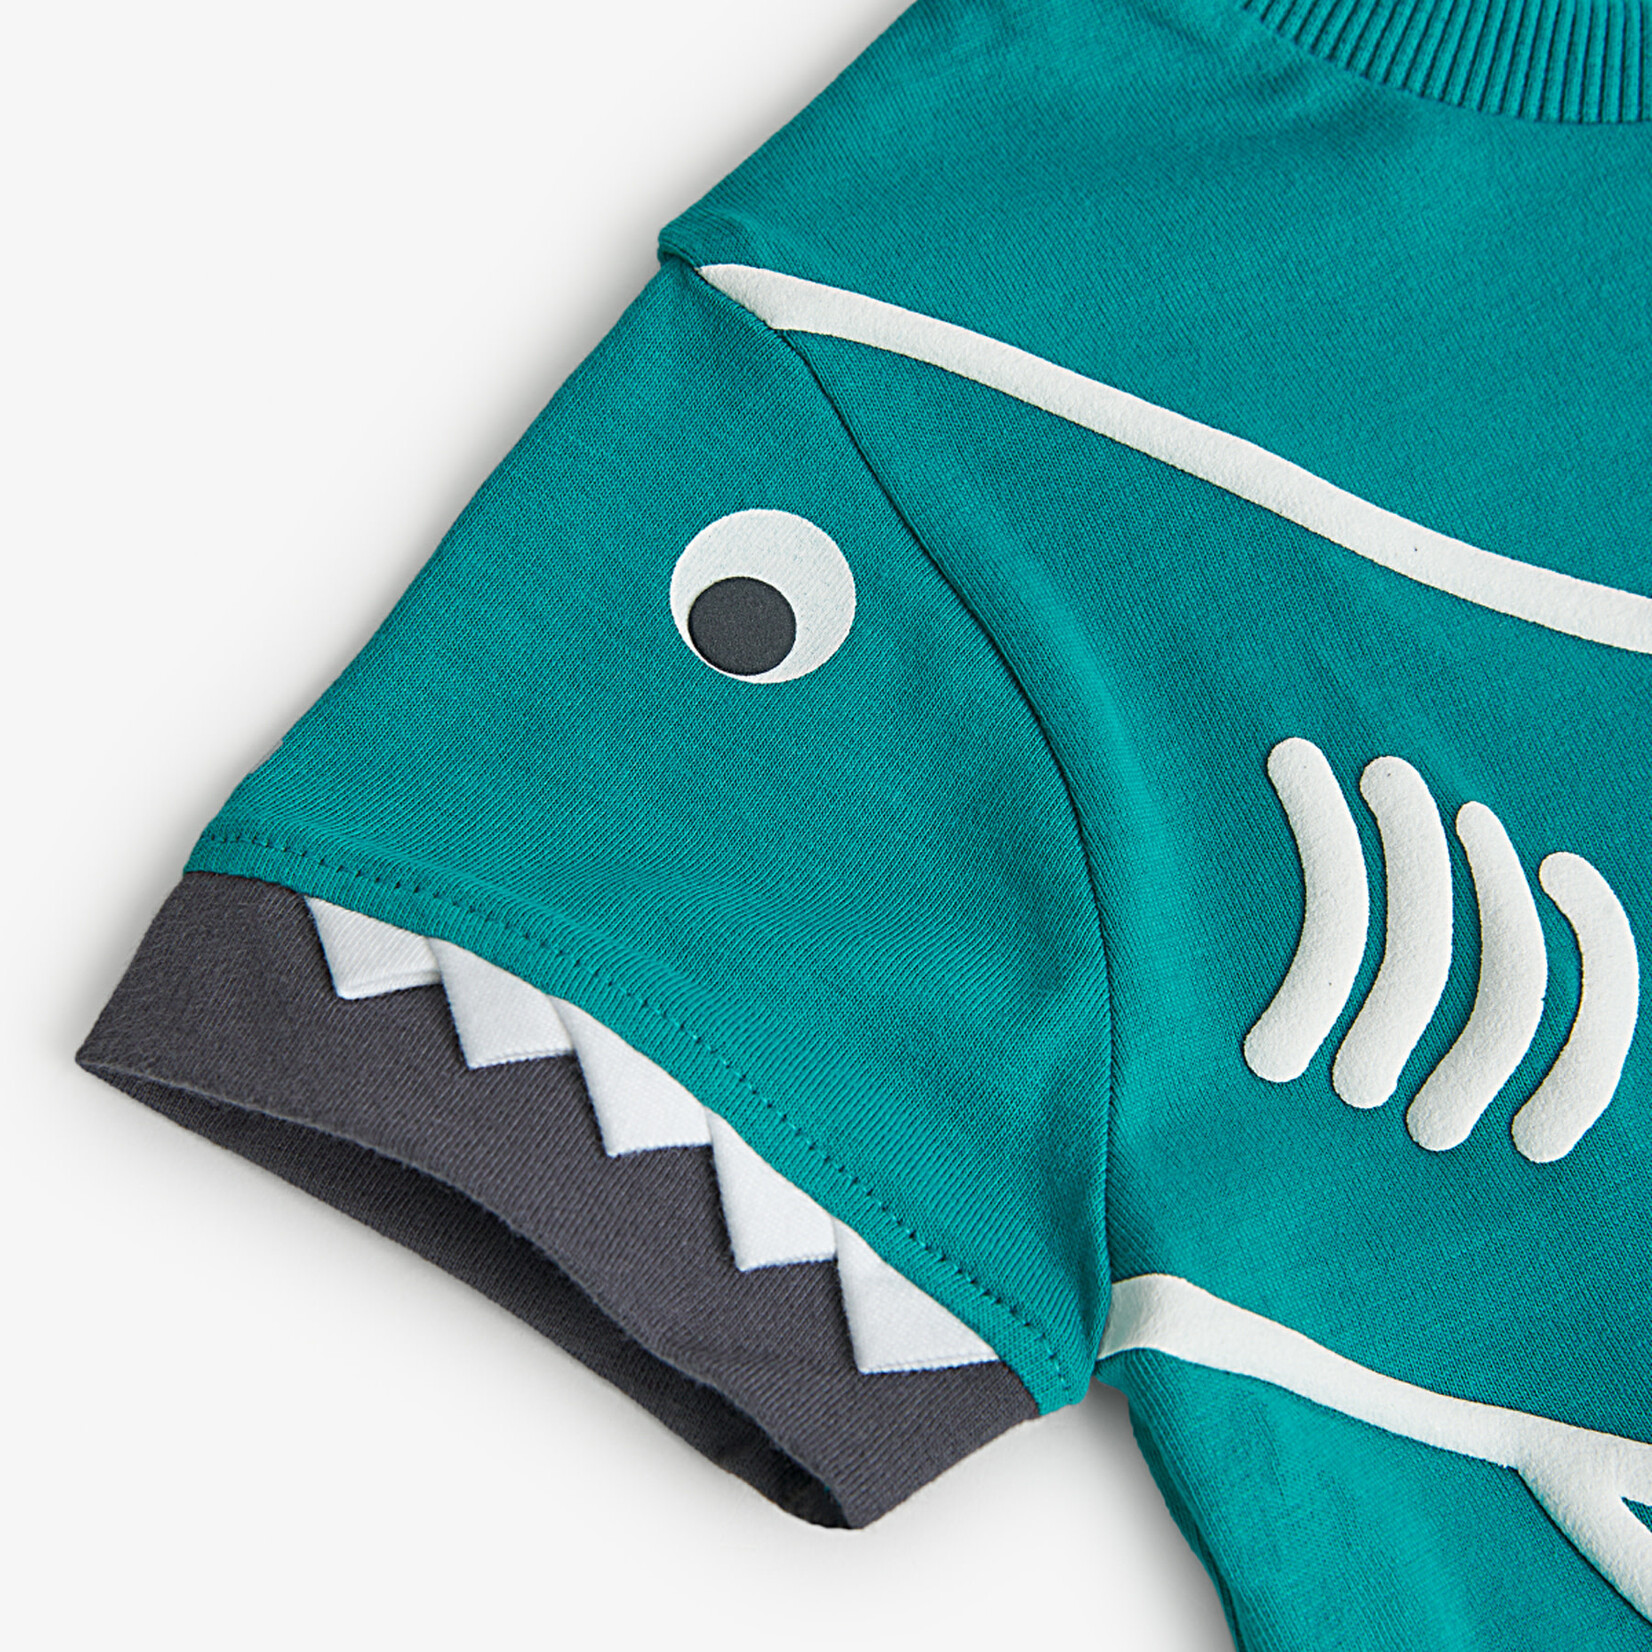 Boboli BOBOLI - Shortsleeve turquoise t-shirt with white shark appliqué